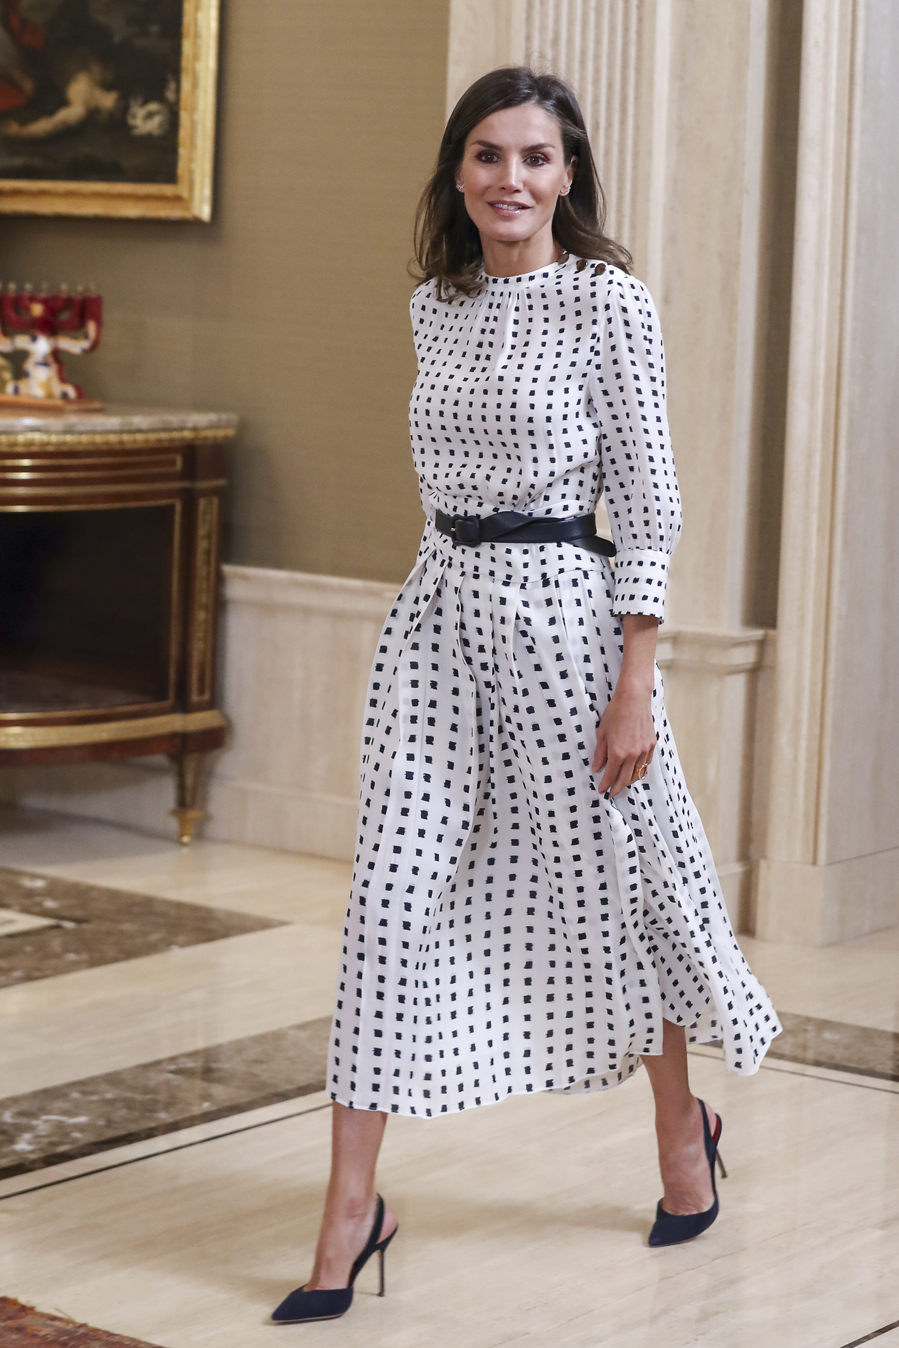 Repite vestido de Massimo Dutti para una recepción en Zarzuela Las prendas 'low cost' del vestidor de Letizia | Moda | EL MUNDO